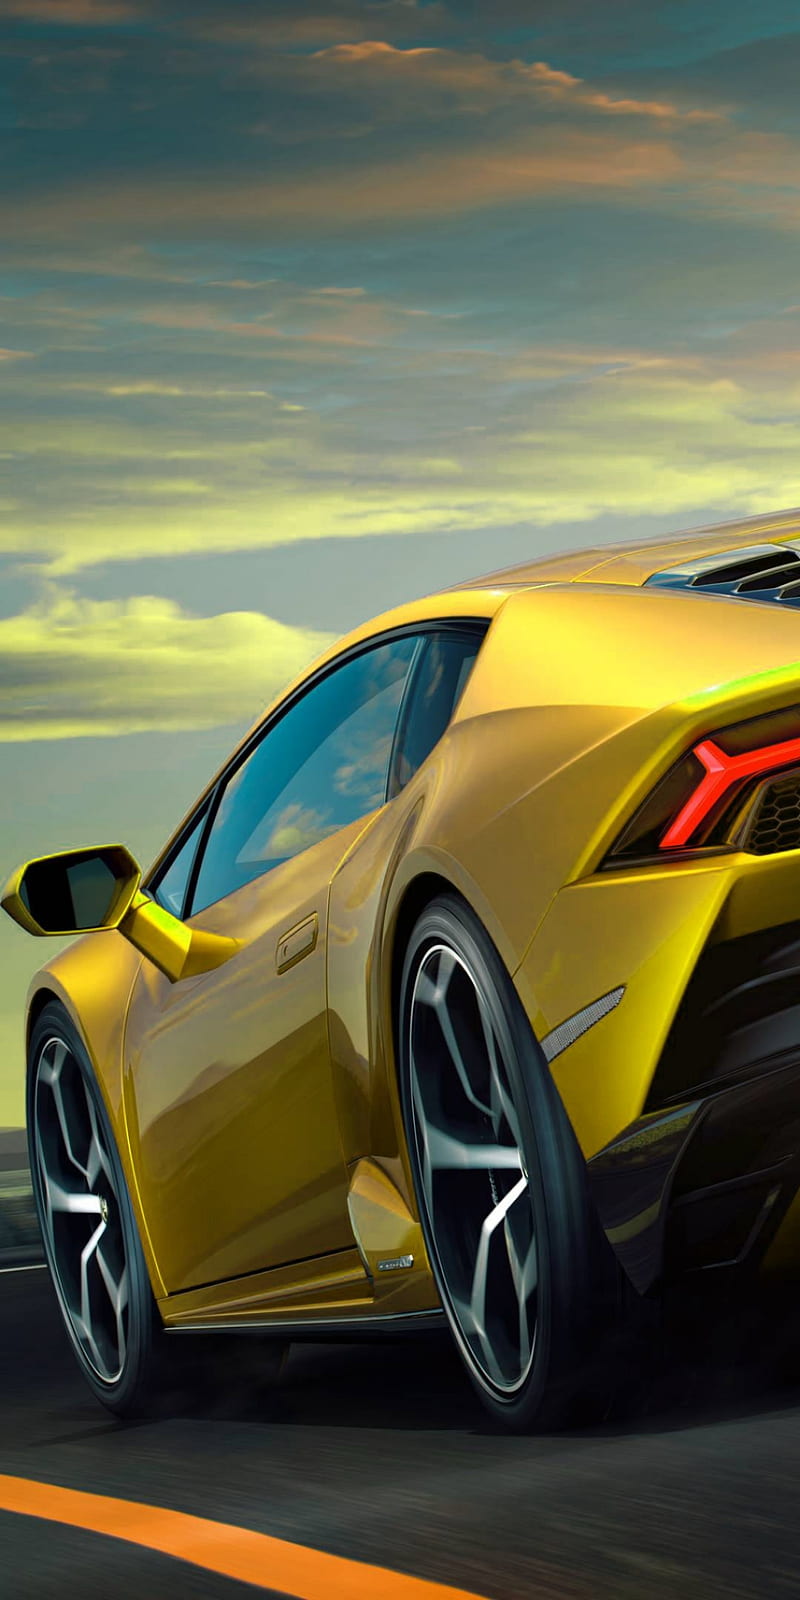 28+] Yellow Lamborghini Wallpapers - WallpaperSafari